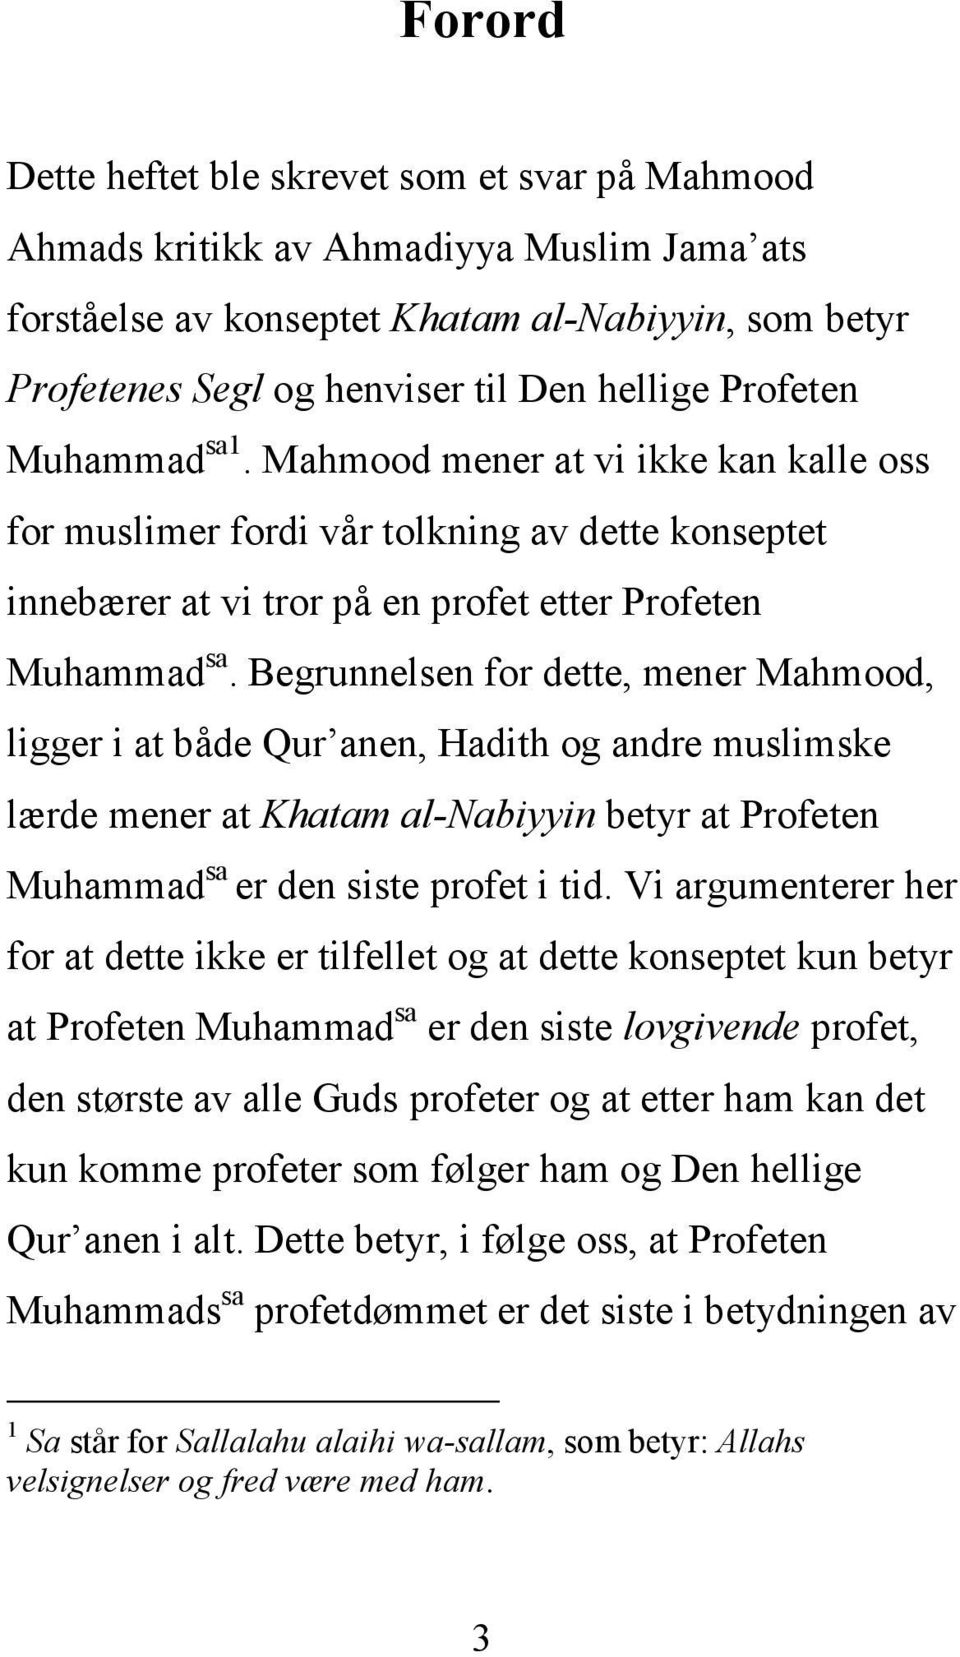 Begrunnelsen for dette, mener Mahmood, ligger i at både Qur anen, Hadith og andre muslimske lærde mener at Khatam al-nabiyyin betyr at Profeten Muhammad sa er den siste profet i tid.